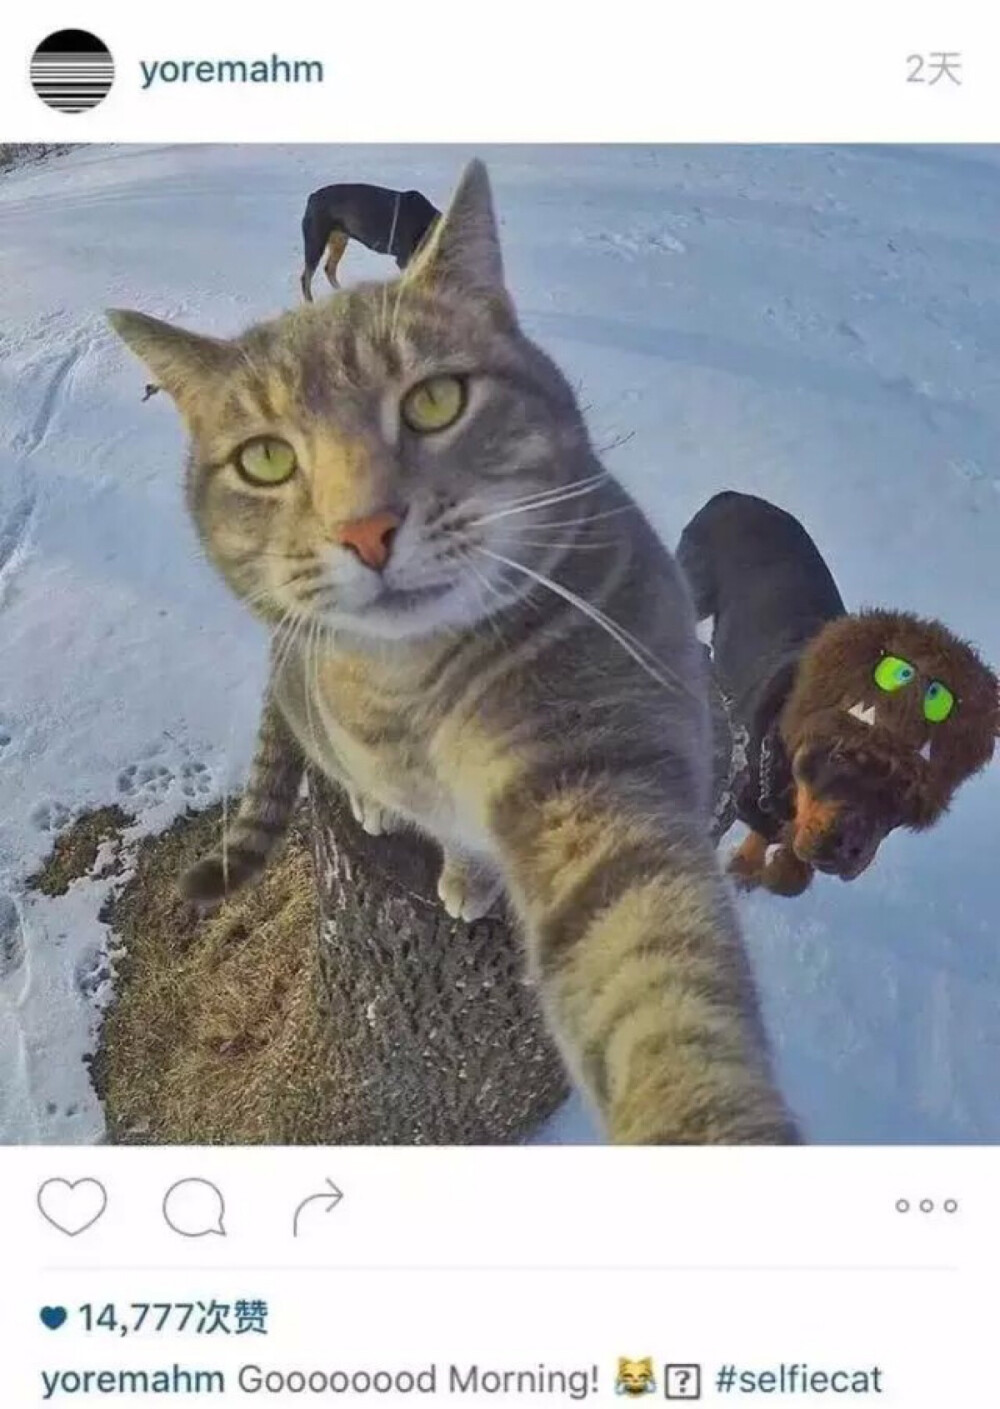 ins上很火的自拍猫 主人说有一次这猫不小心按了GoPro快门键 从此爱上自拍 